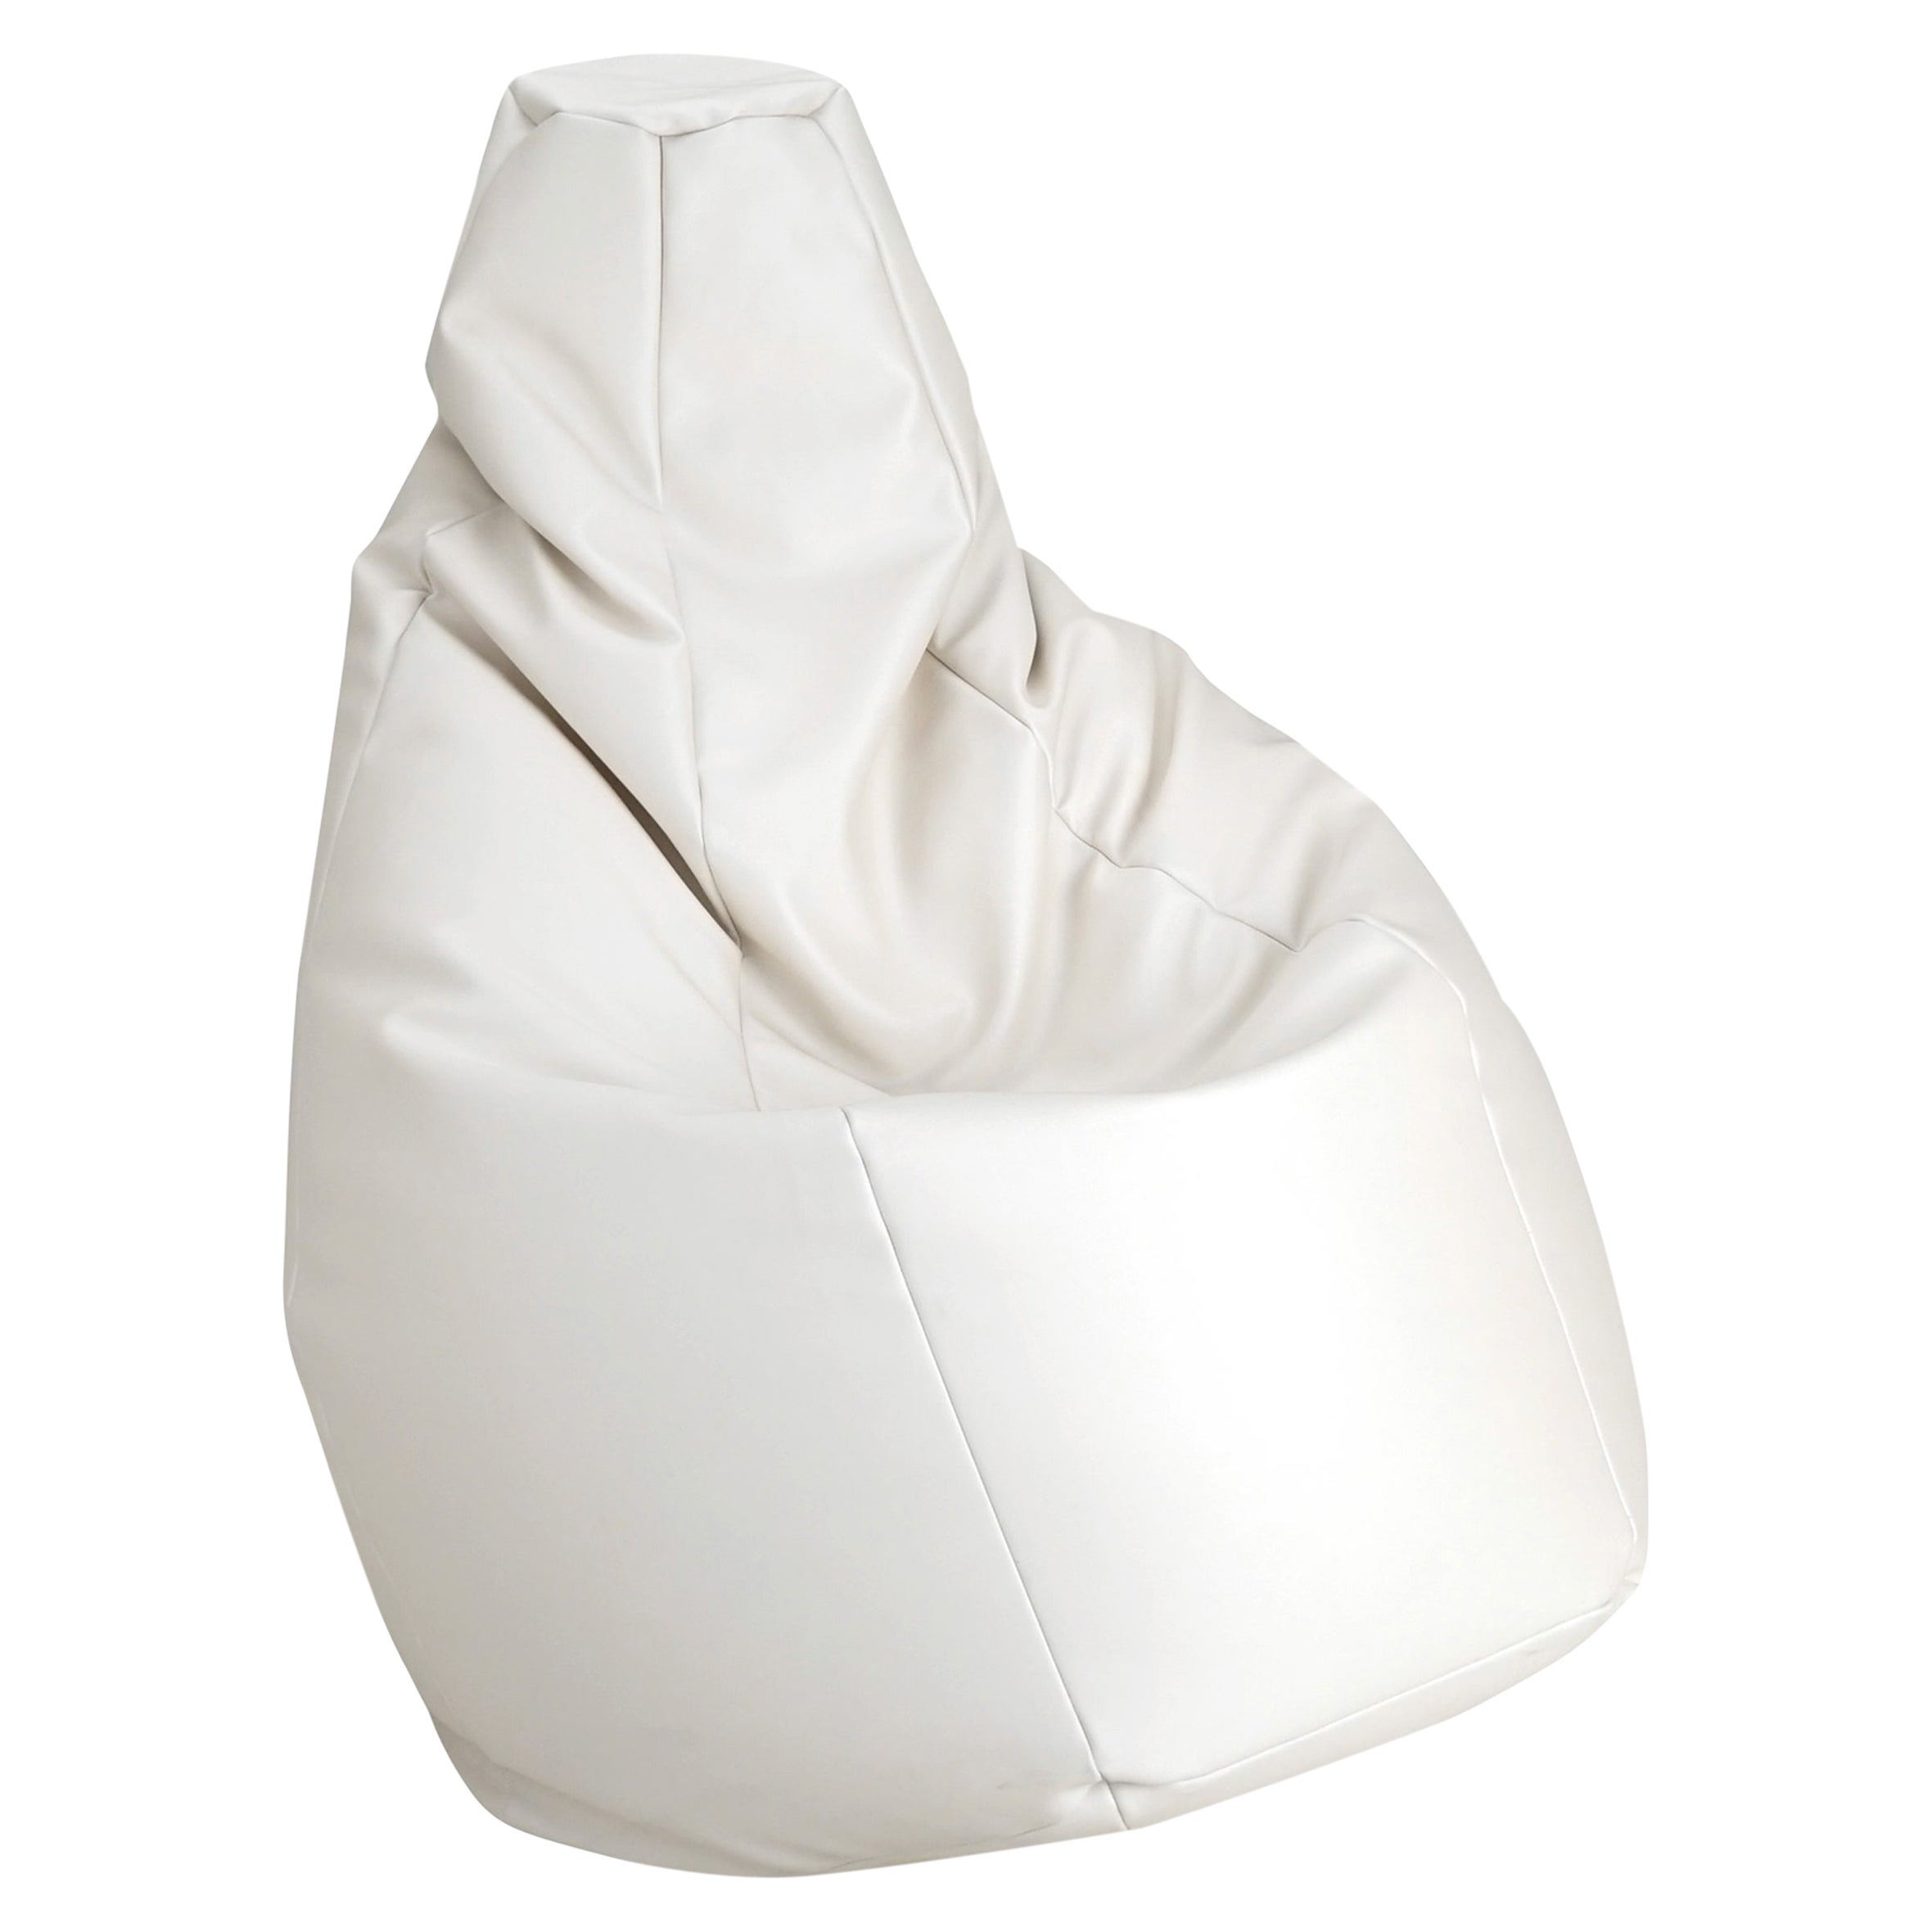 Zanotta Small Sacco in White Vip Fabric by Gatti, Paolini, Teodoro For Sale